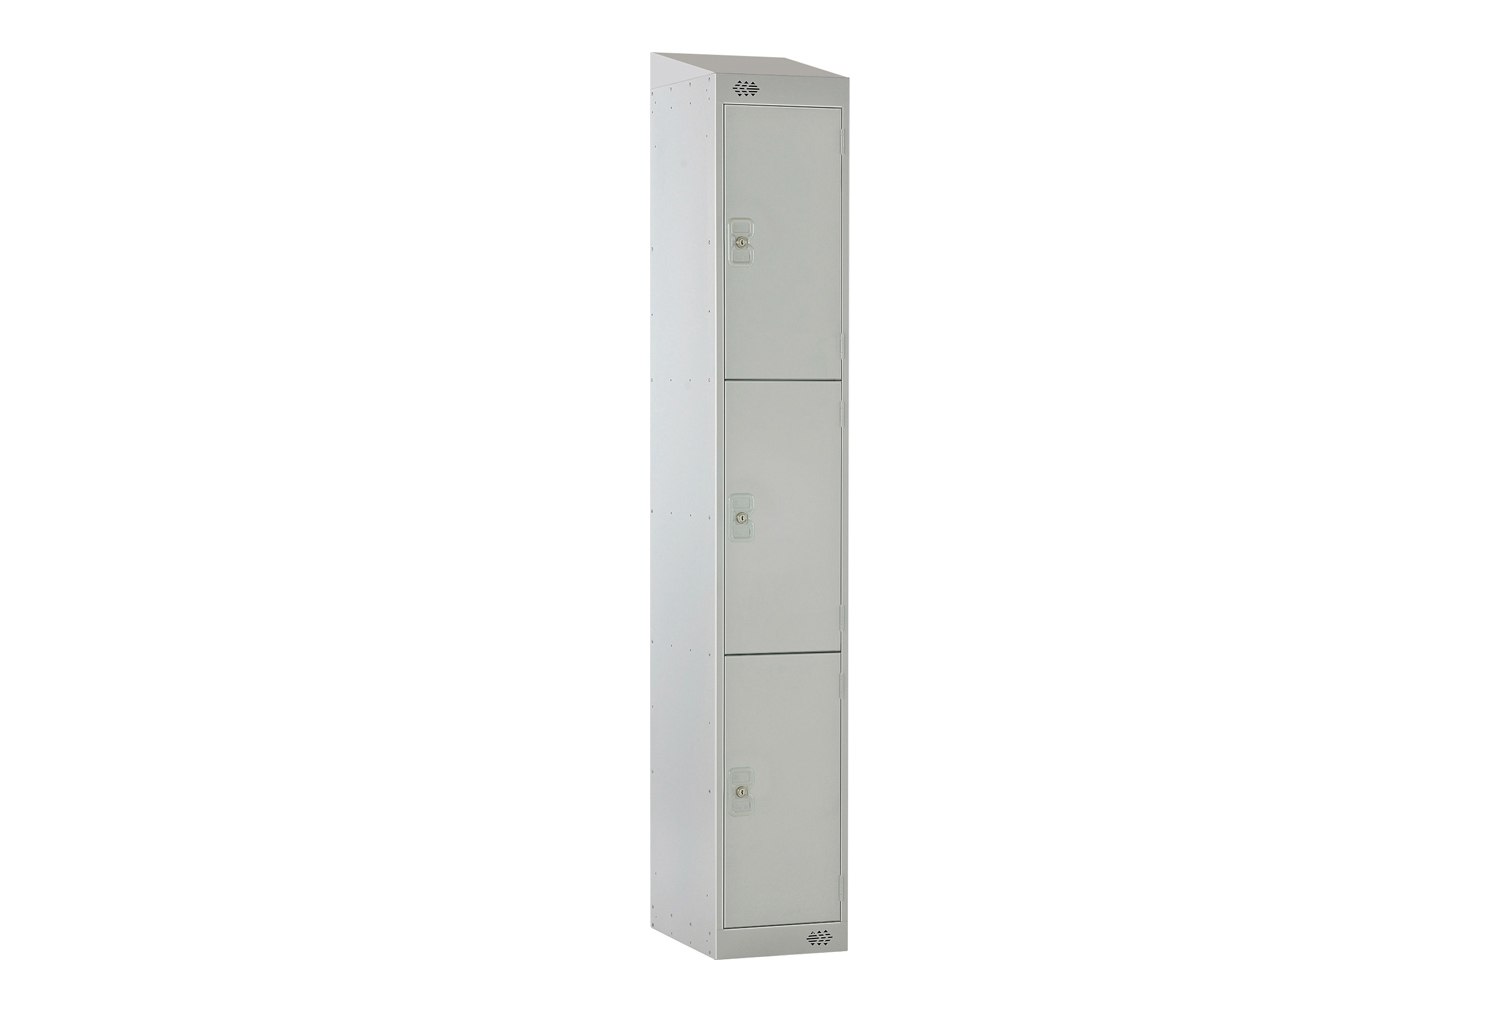 Deluxe 3 Door Locker With Sloping Top, 30wx45dx193/180h (cm), Cam Lock, Grey